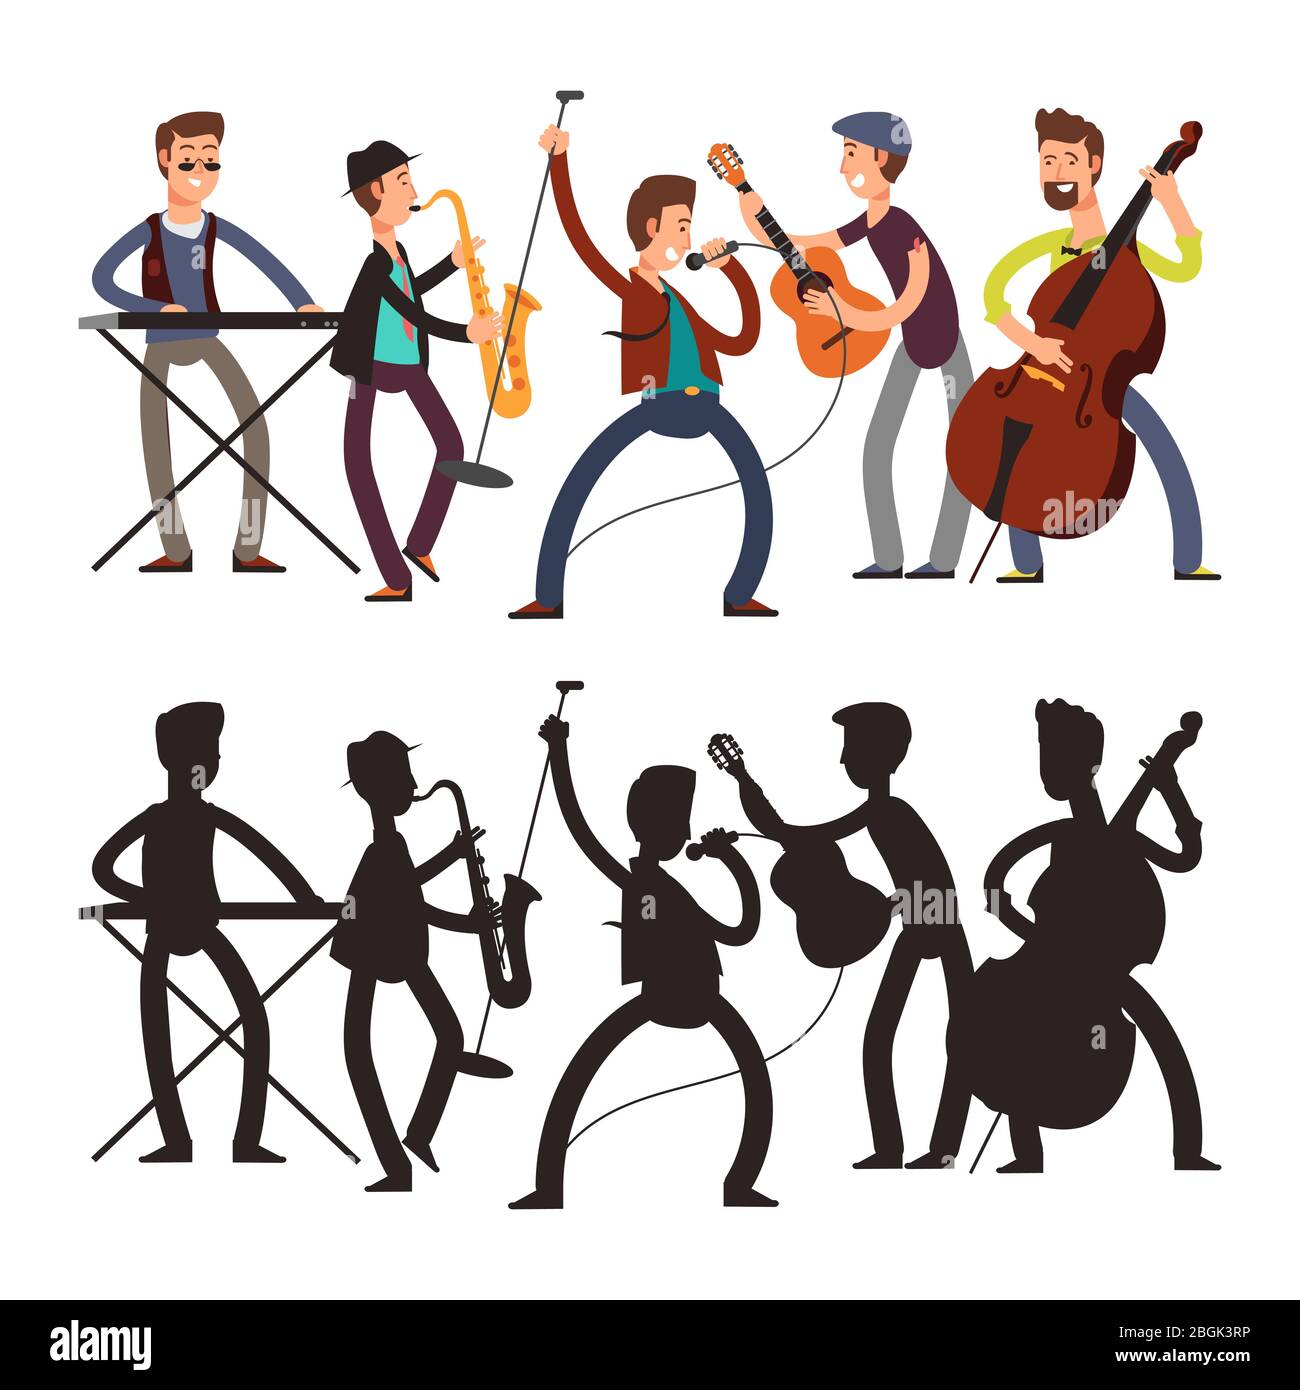 Musica pop band maschile che suona musica. Illustrazione vettoriale di personaggi e silhouette di fumetti musicisti isolati su sfondo bianco Illustrazione Vettoriale